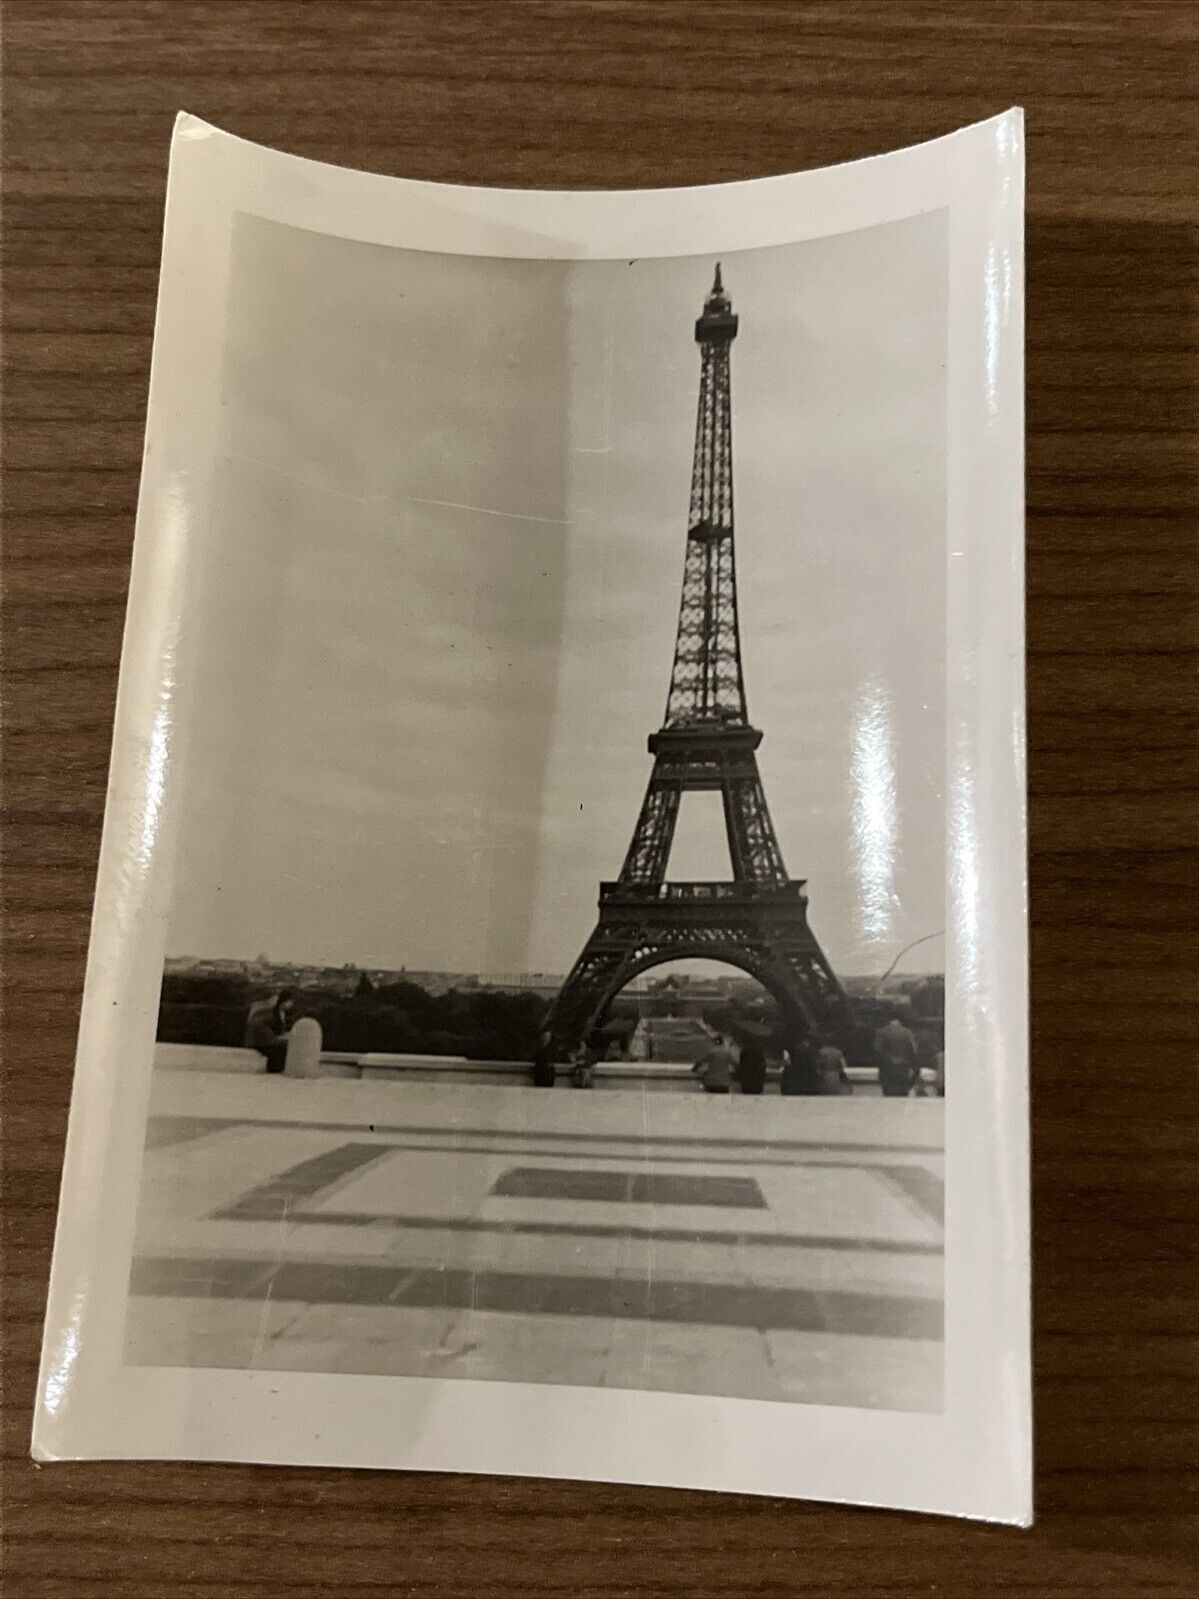 PARIS FRANCE EFFIEL TOWER ORIGINAL VINTAGE PHOTO 99 CENTS 89 postage Great IMAGE